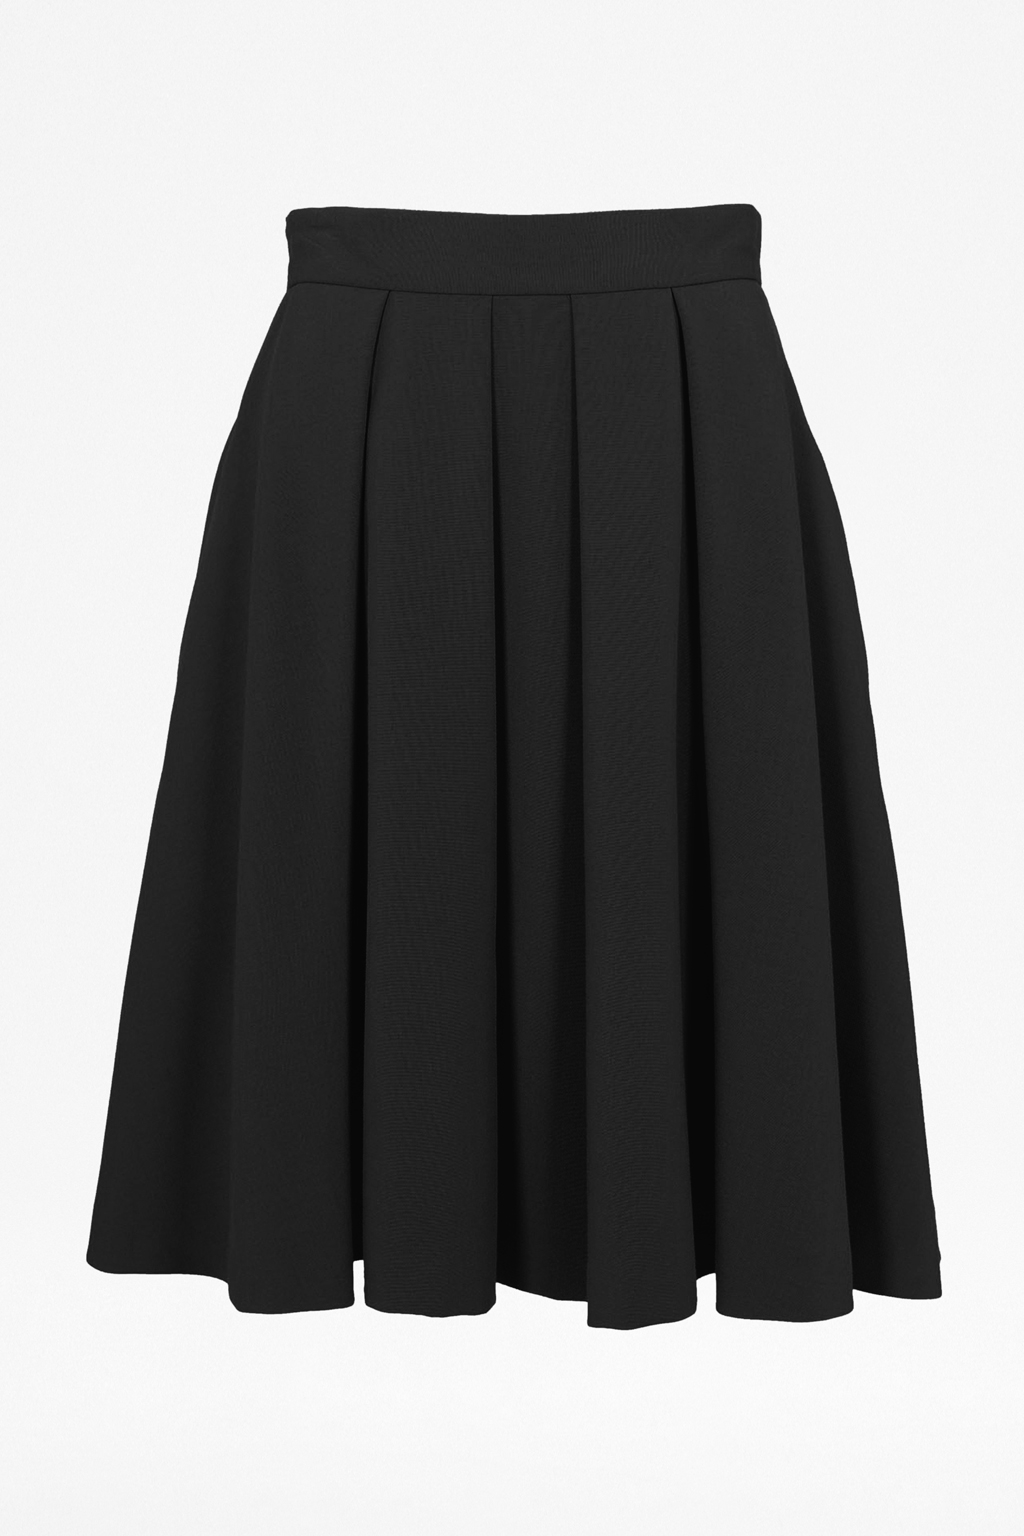 Flared Black Skirt 97